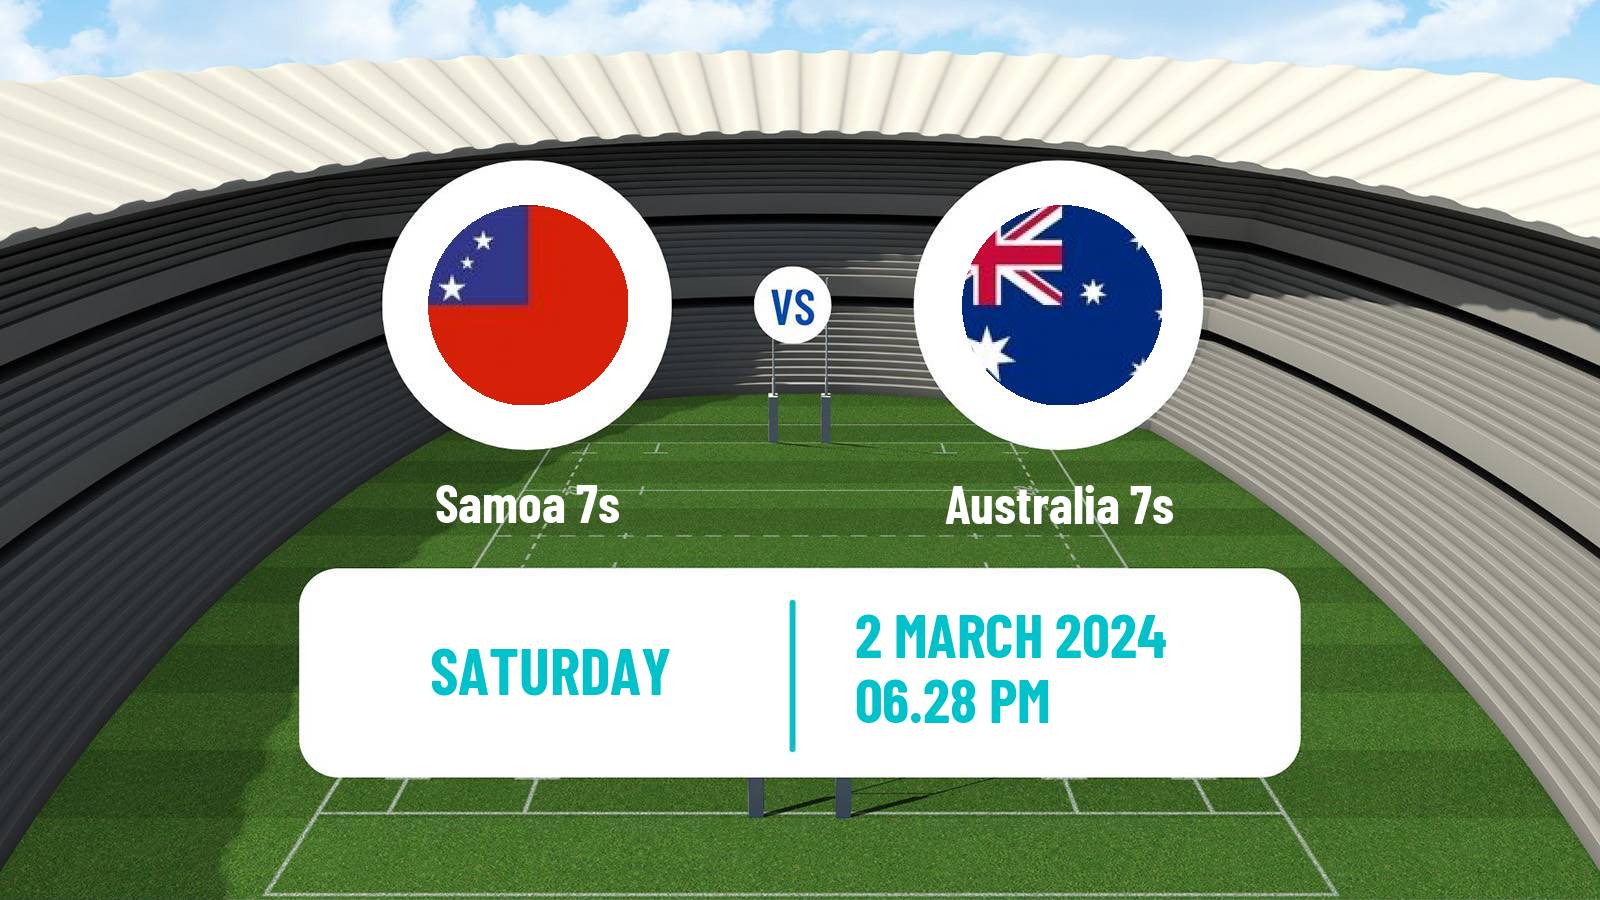 Rugby union Sevens World Series - USA Samoa 7s - Australia 7s